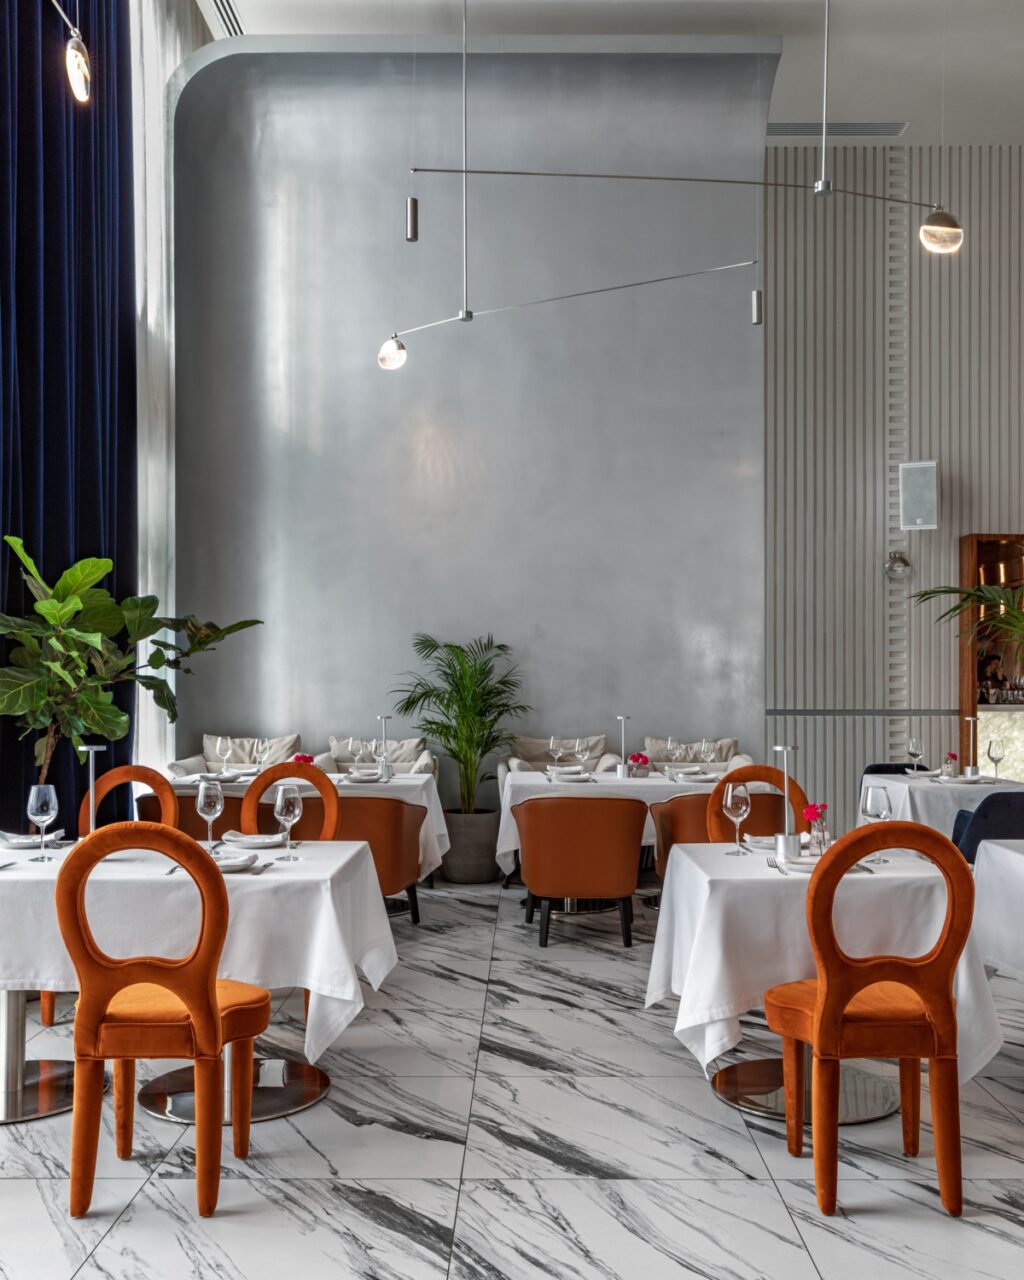 BENUAR レストラン アールデコ調のエレガンスにポップアートのきらめくタッチを加えたレストラン